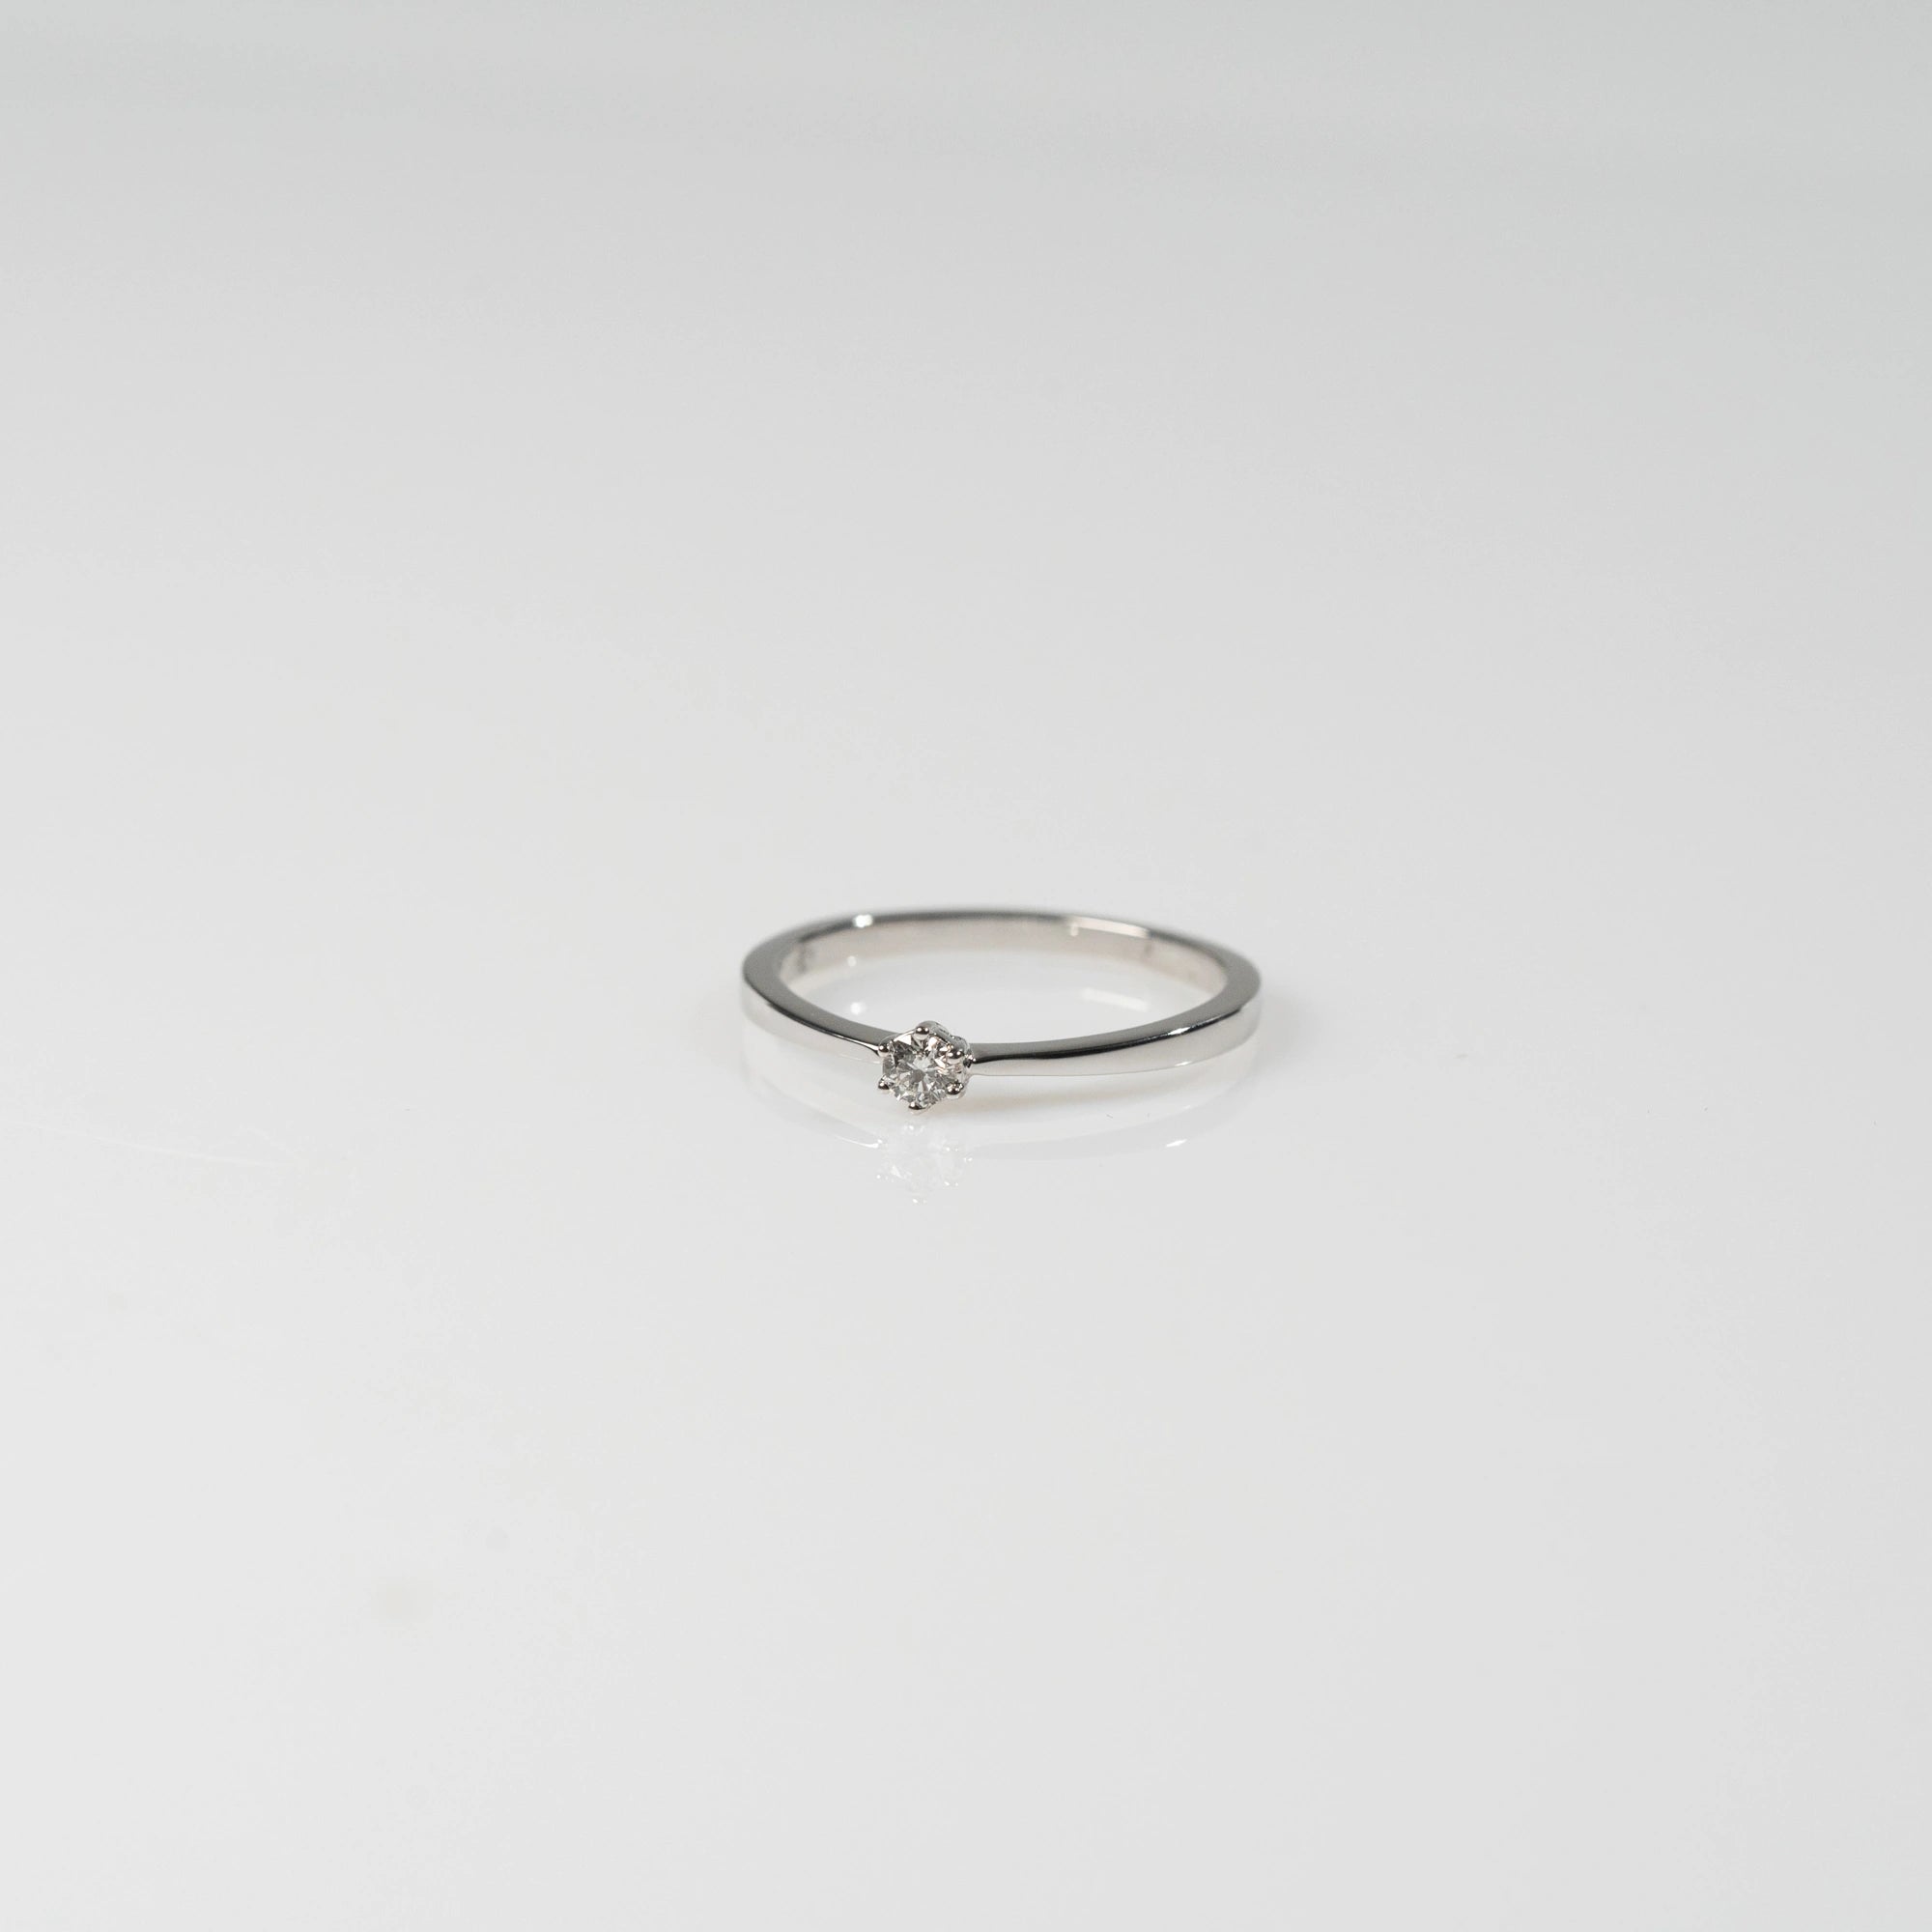 Produktfotografie des liegenden Weißgold-Verlobungsrings "Promise" aus der Schmuckatelier Lang Collection mit einem in einer 6er Kappe gefassten Diamanten